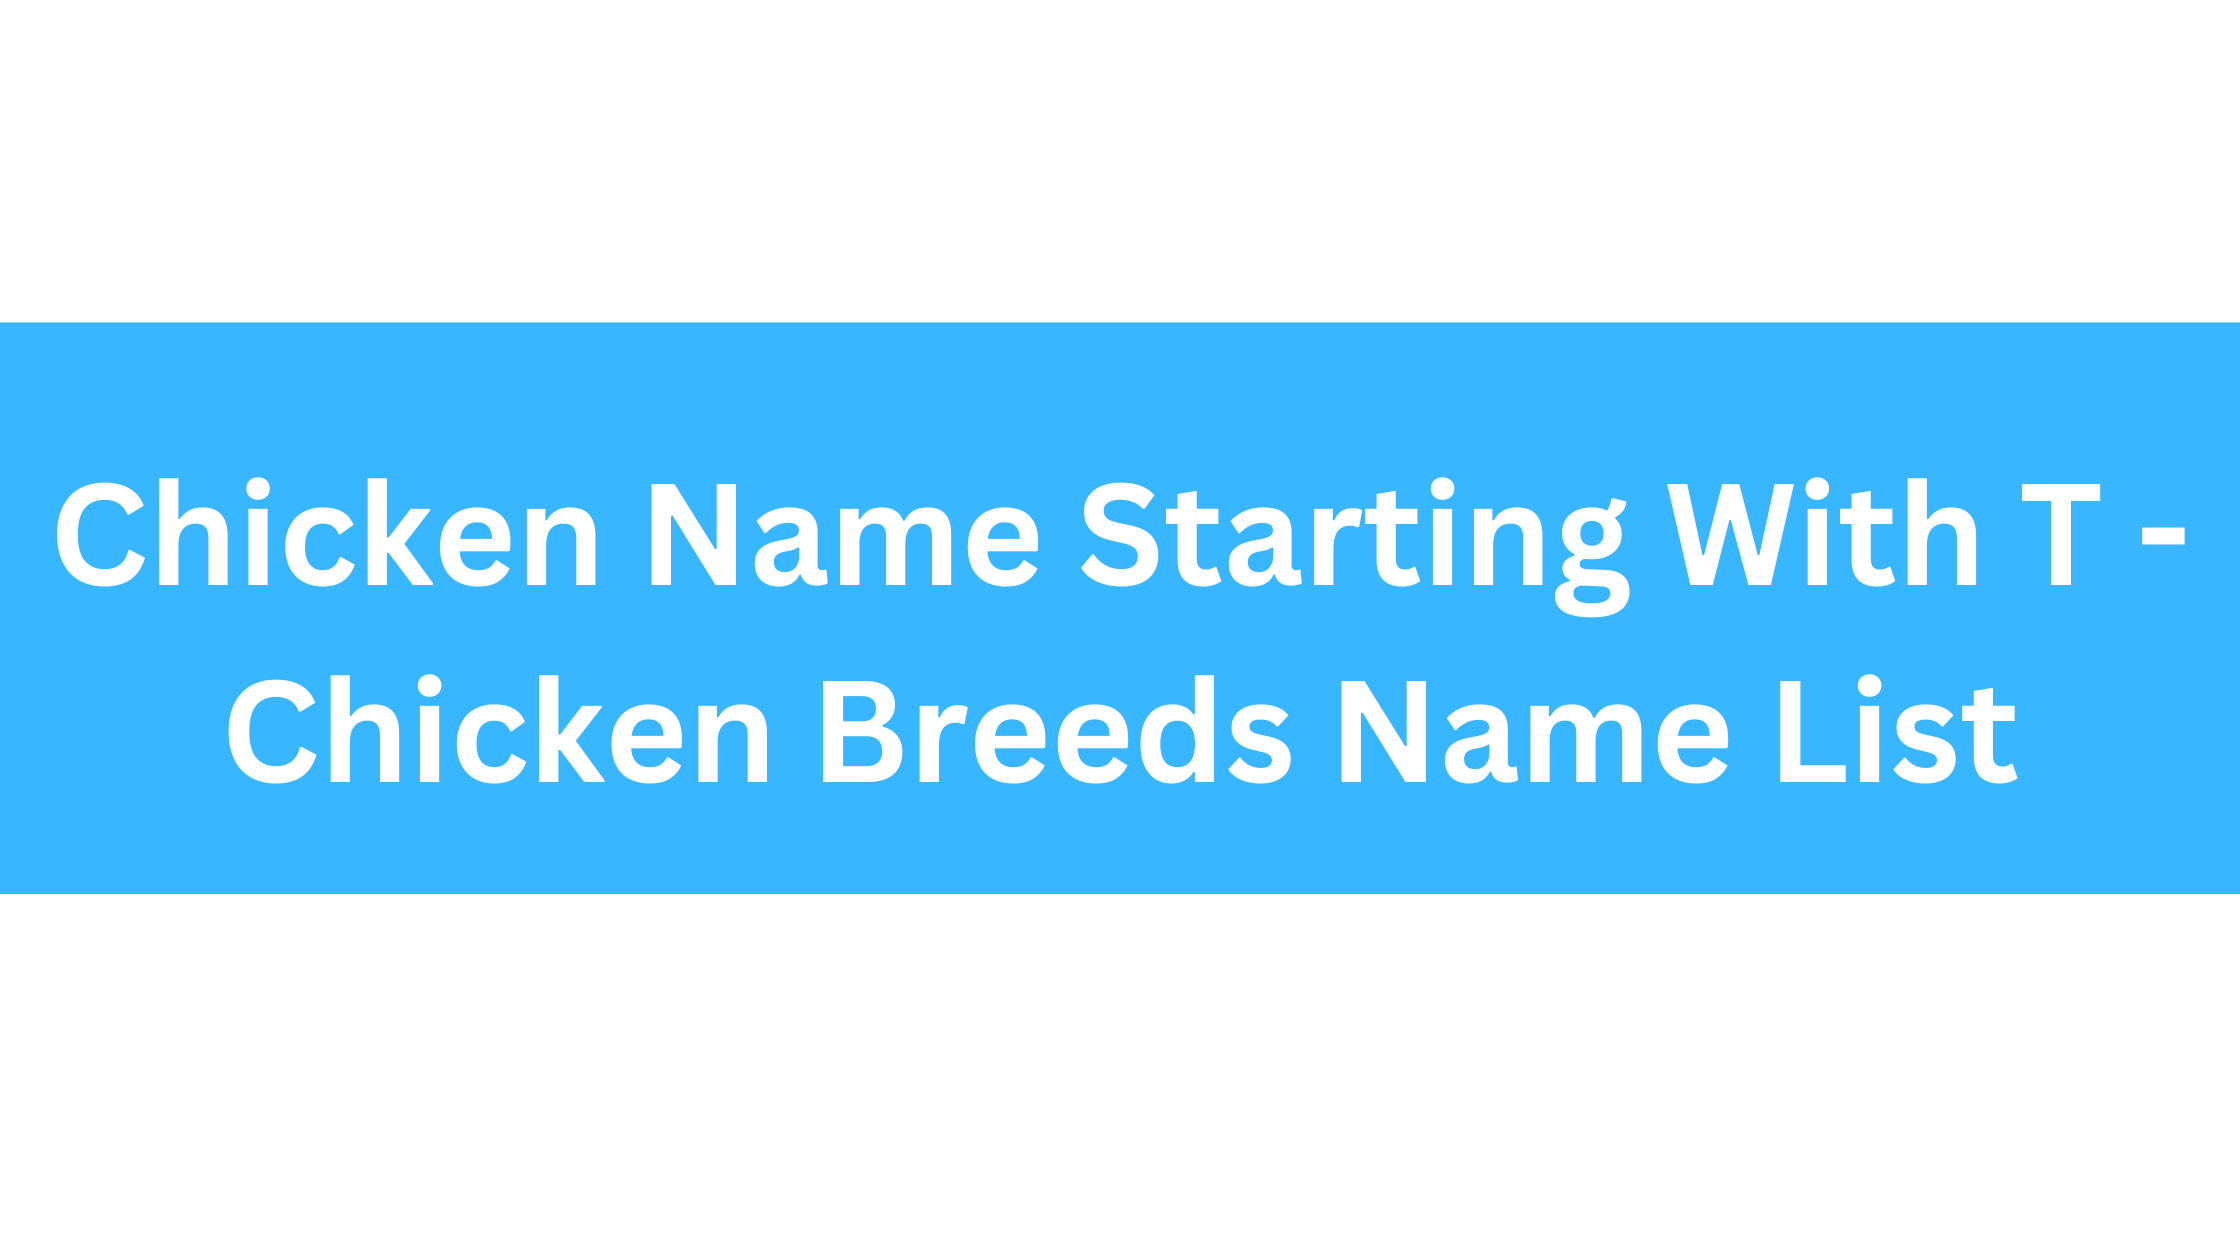 Chicken Breeds That Start With T